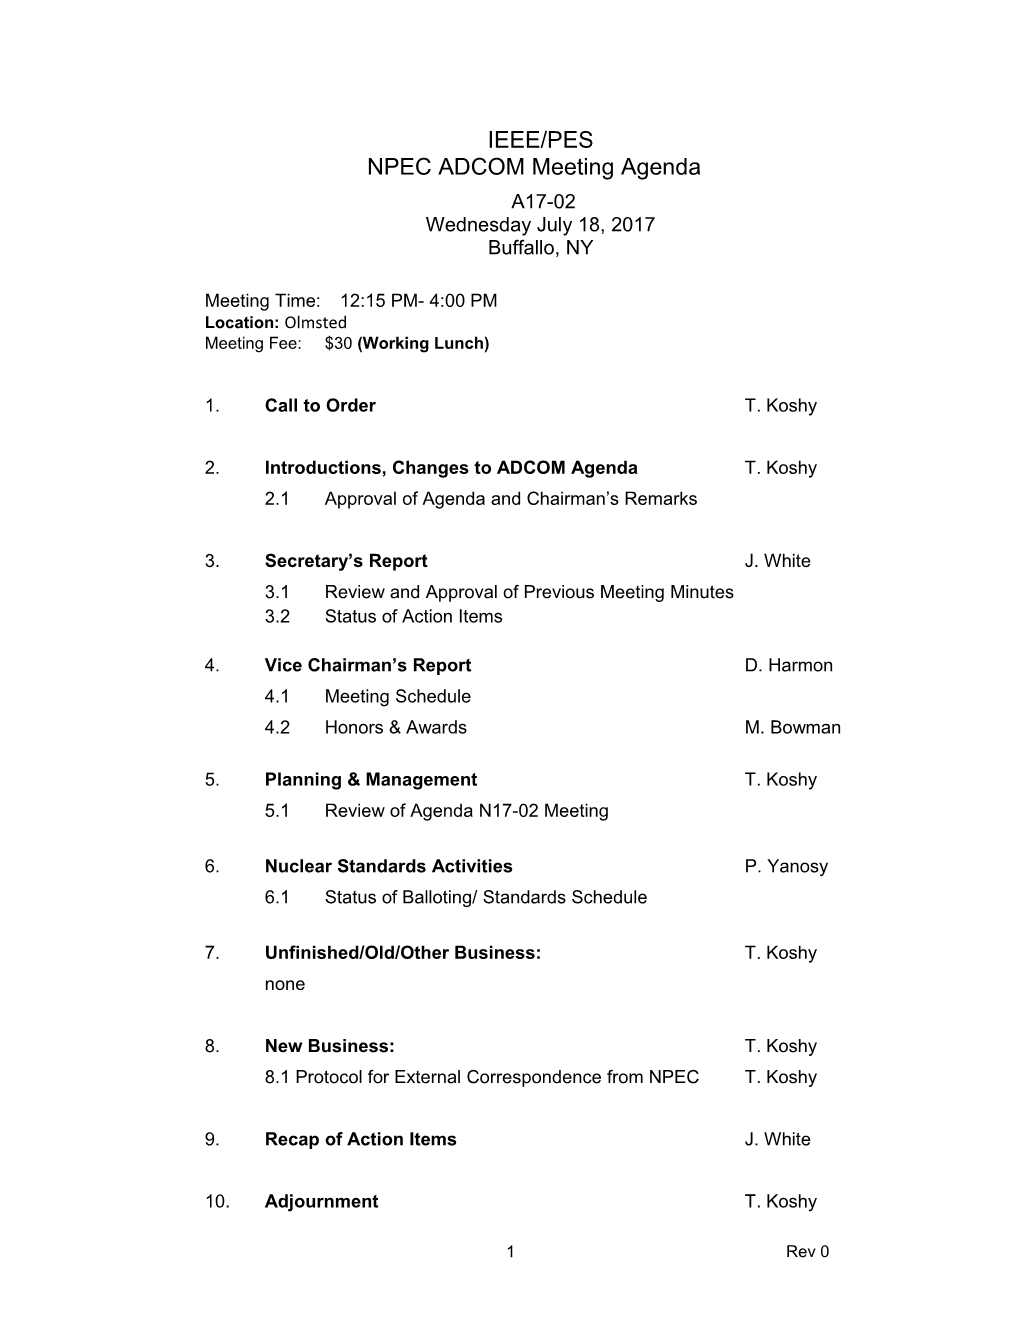 NPEC ADCOM Meeting Agenda